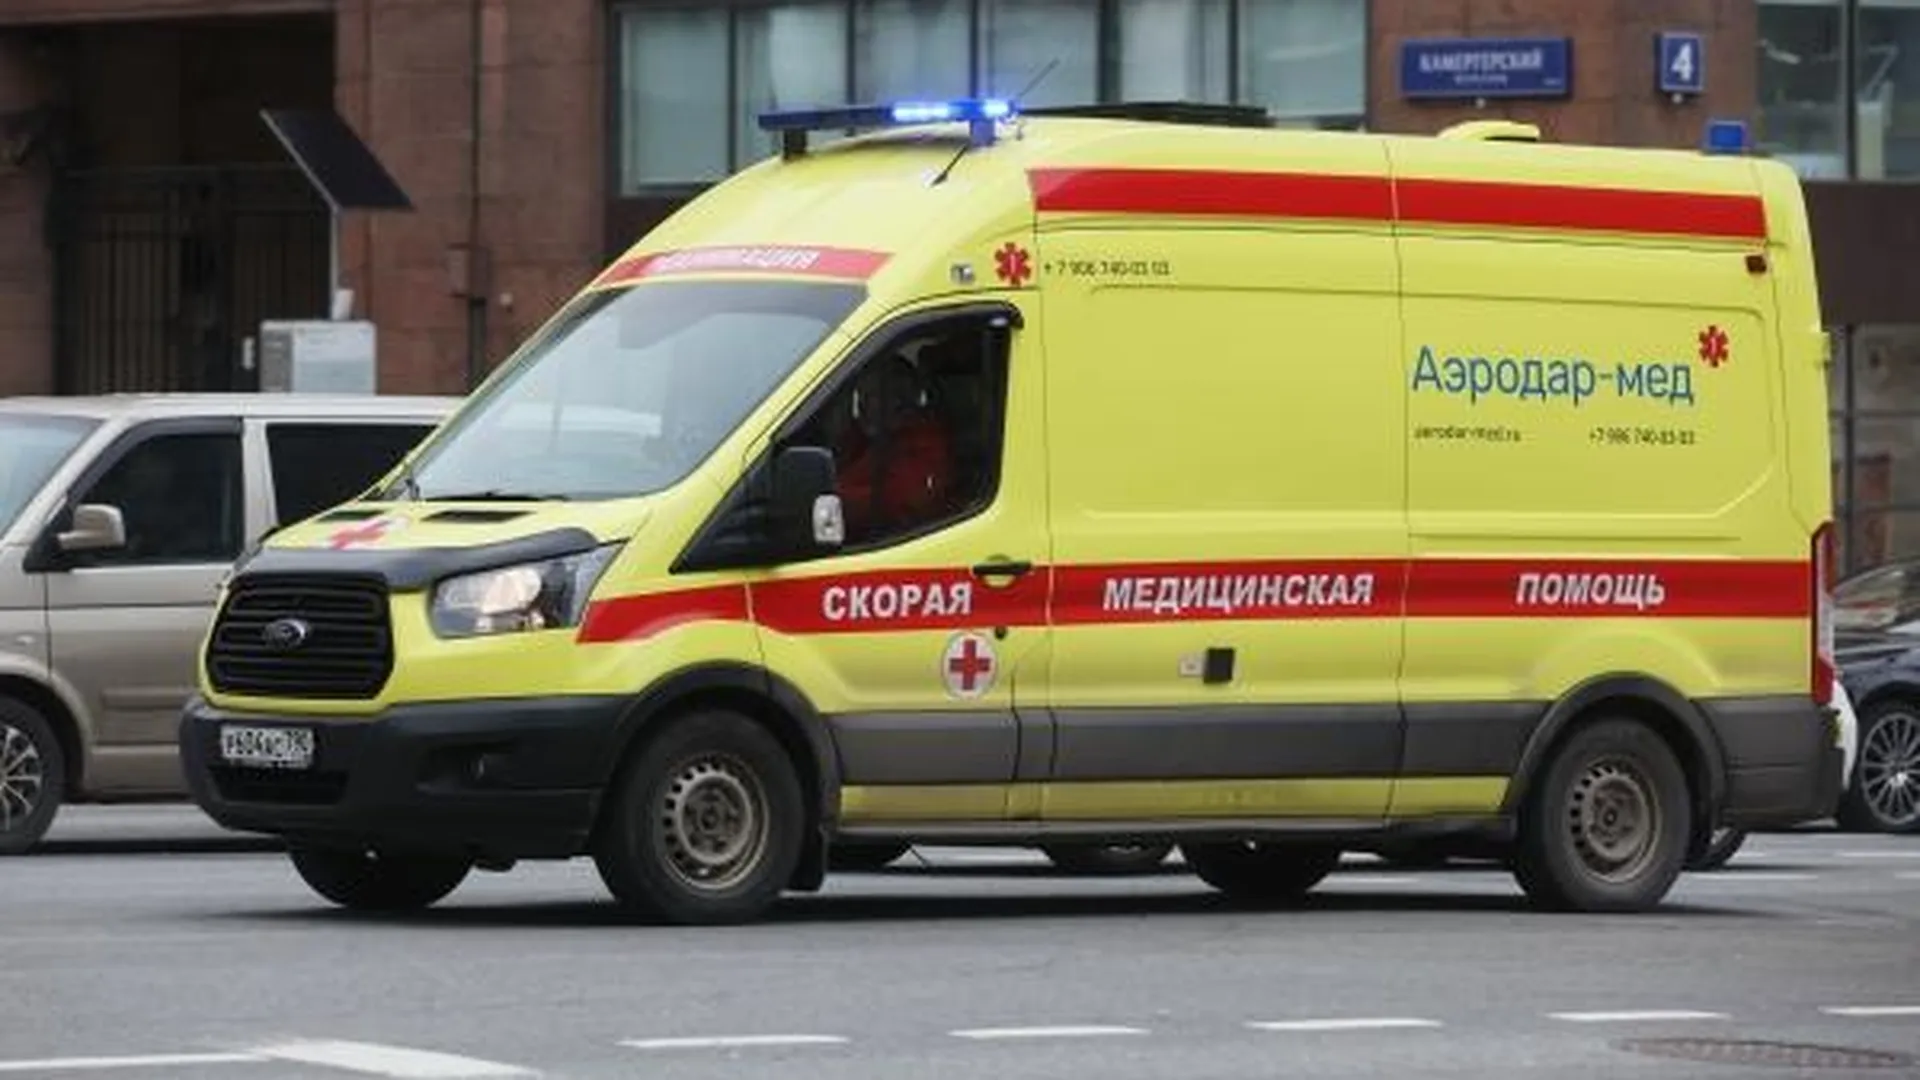 Упавший на рельсы в метро Петербурга мужчина умер в реанимации